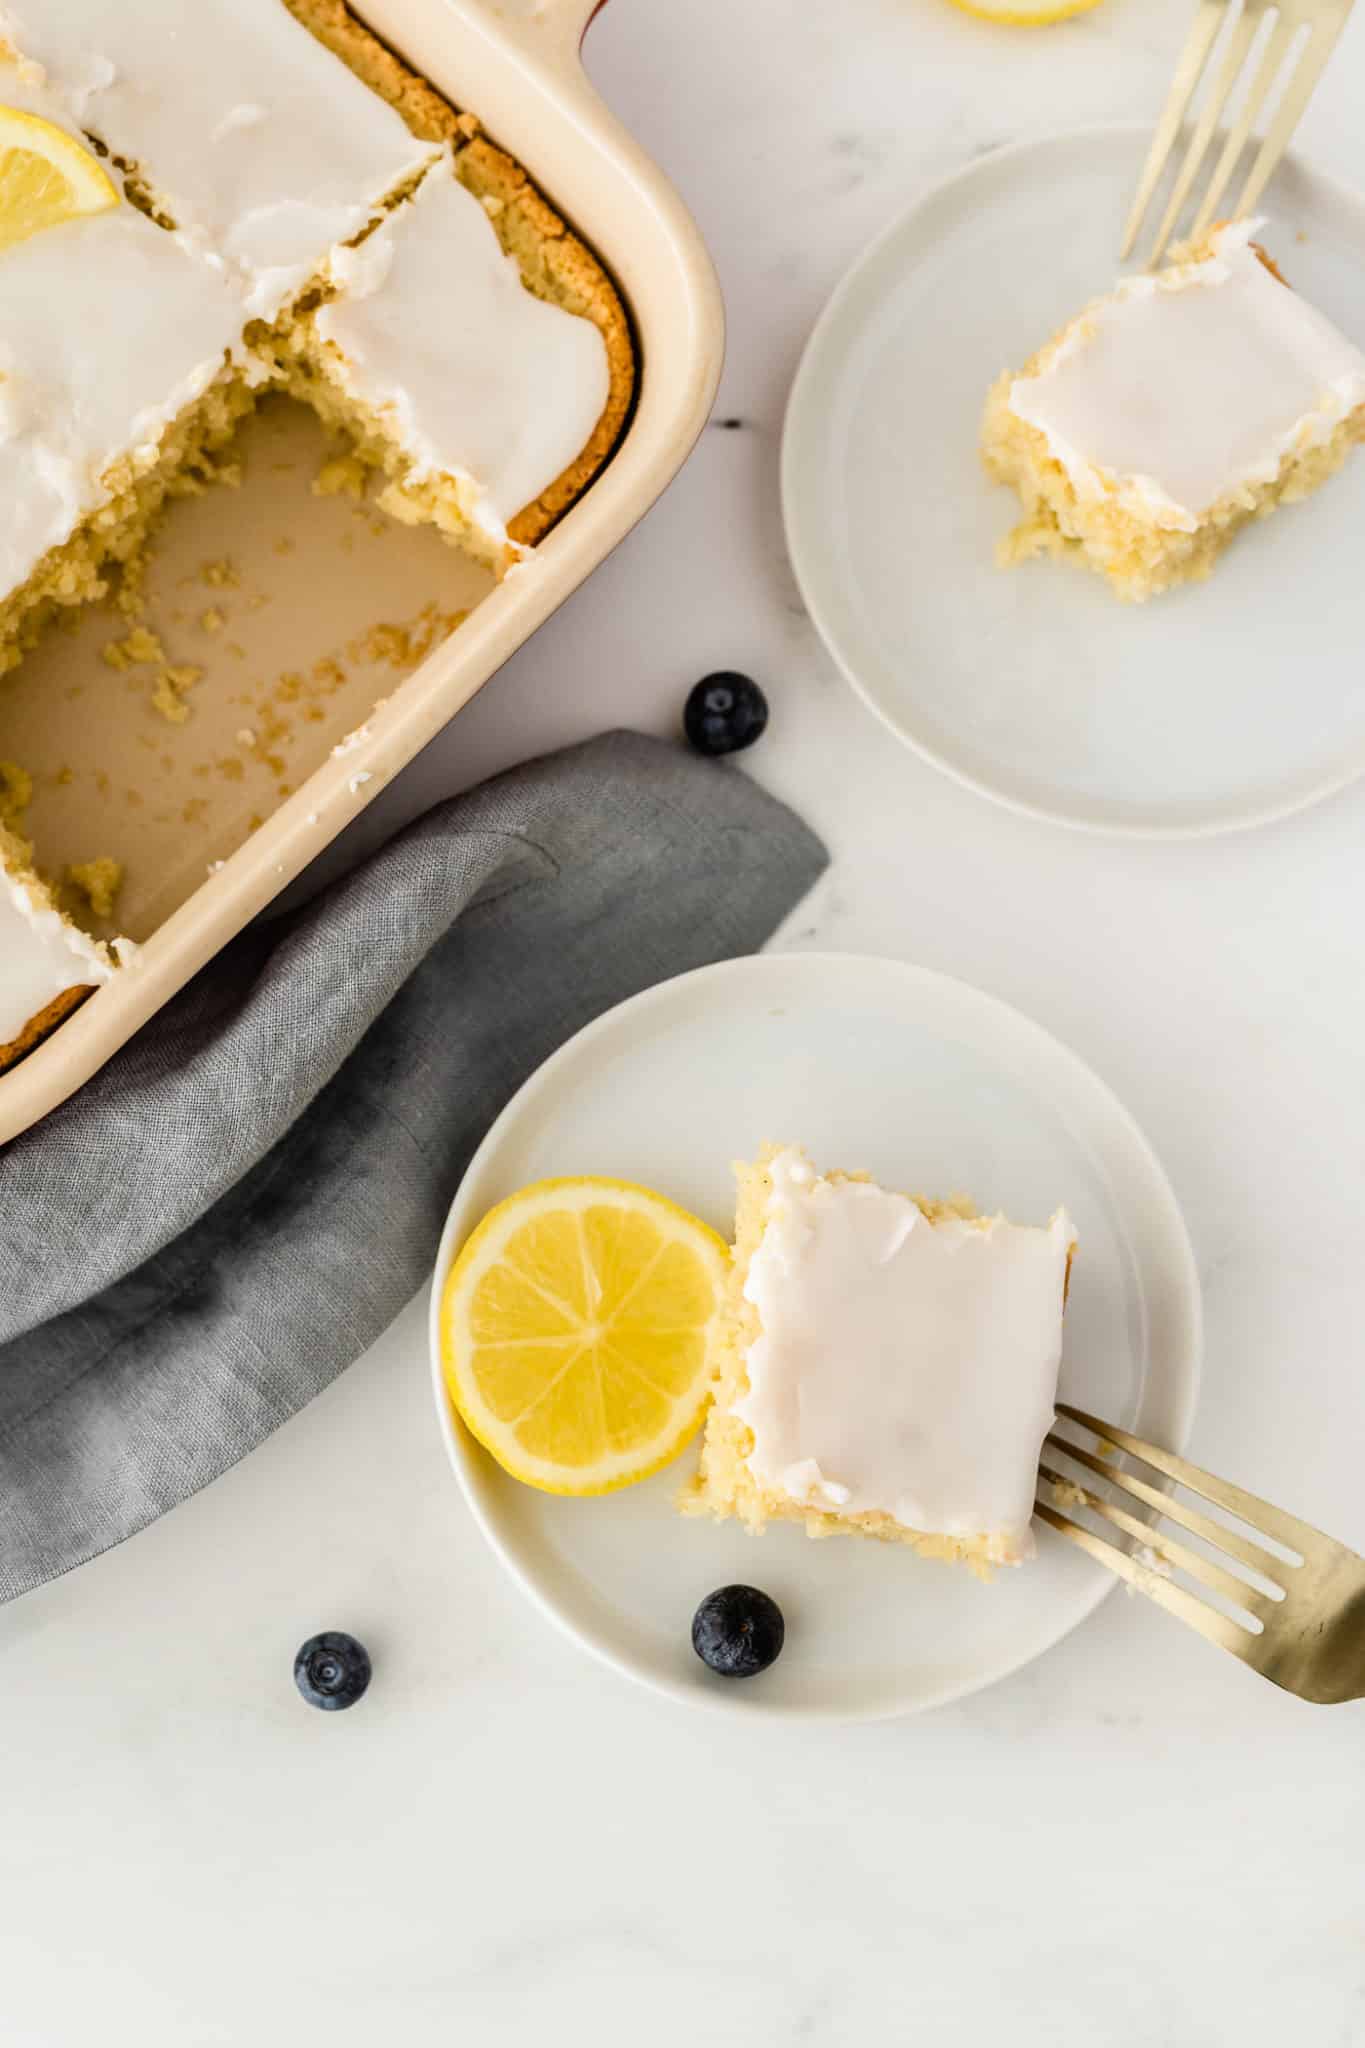 gluten free lemon cake served on white plates